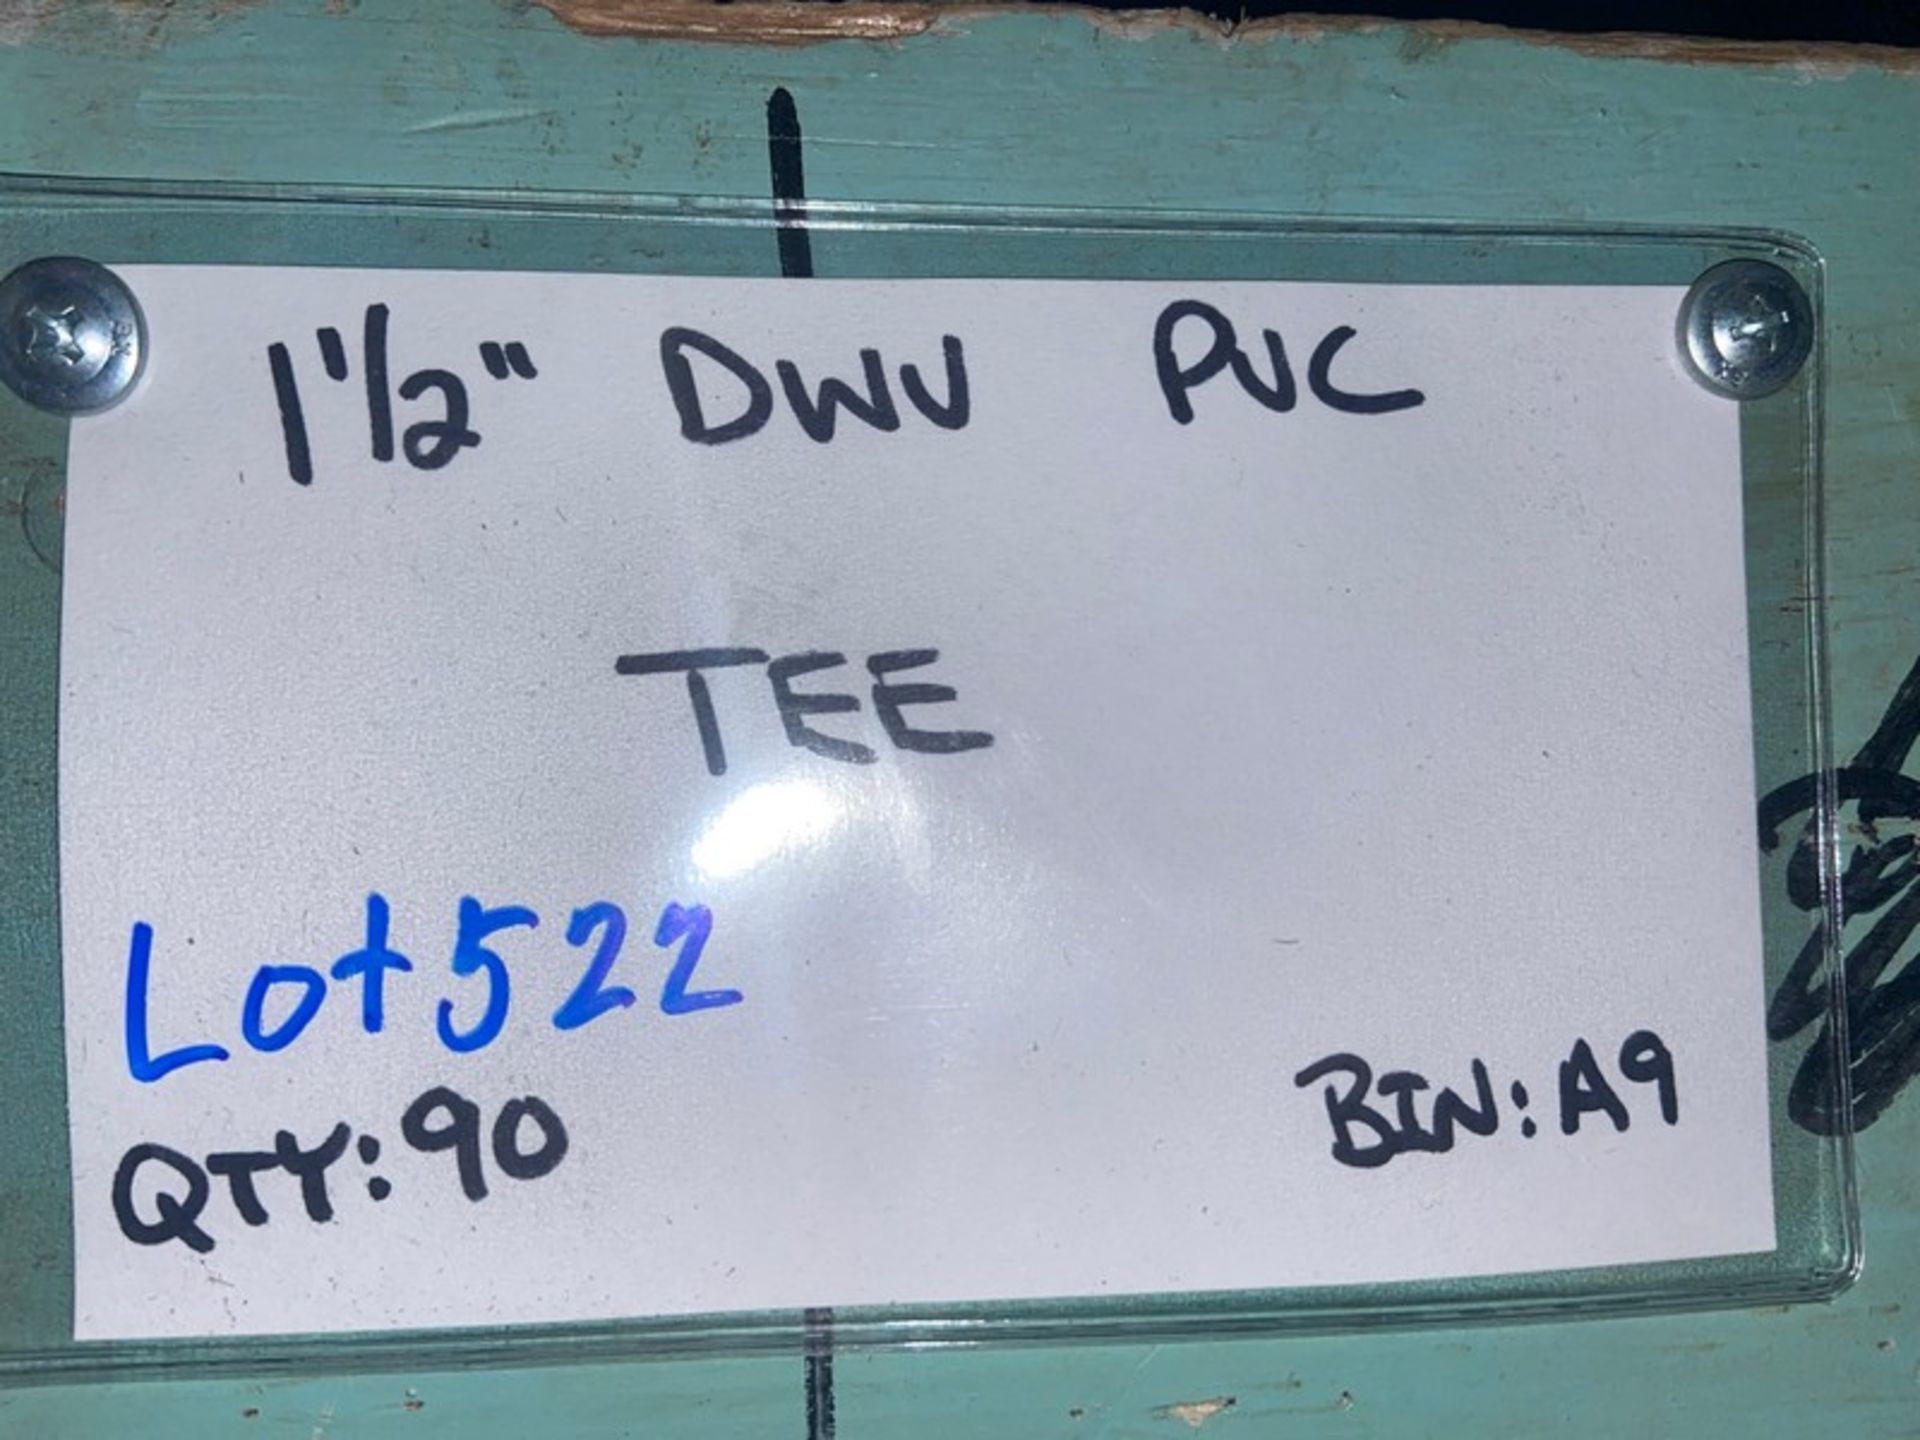 (90) 1 1/2” DWV PVC TEE (Bin:A9) (LOCATED IN MONROEVILLE, PA) - Bild 3 aus 5